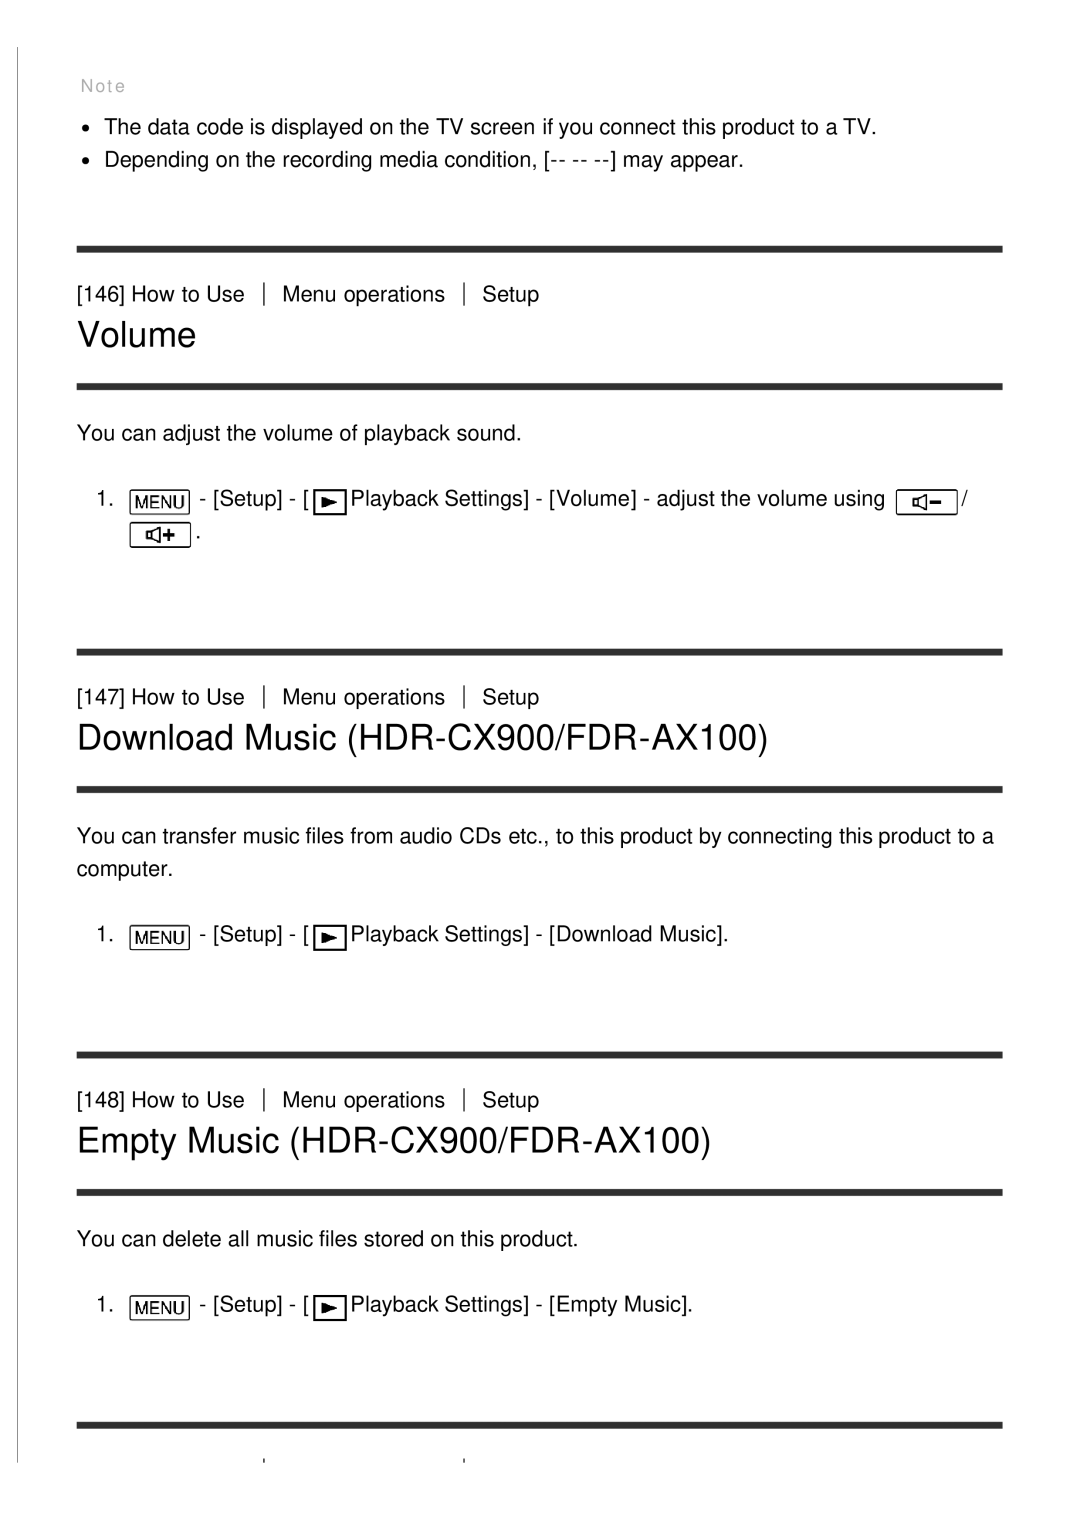 Sony HDR-CX900E, FDR-AX100E manual Volume, Download Music HDR-CX900/FDR-AX100, Empty Music HDR-CX900/FDR-AX100 